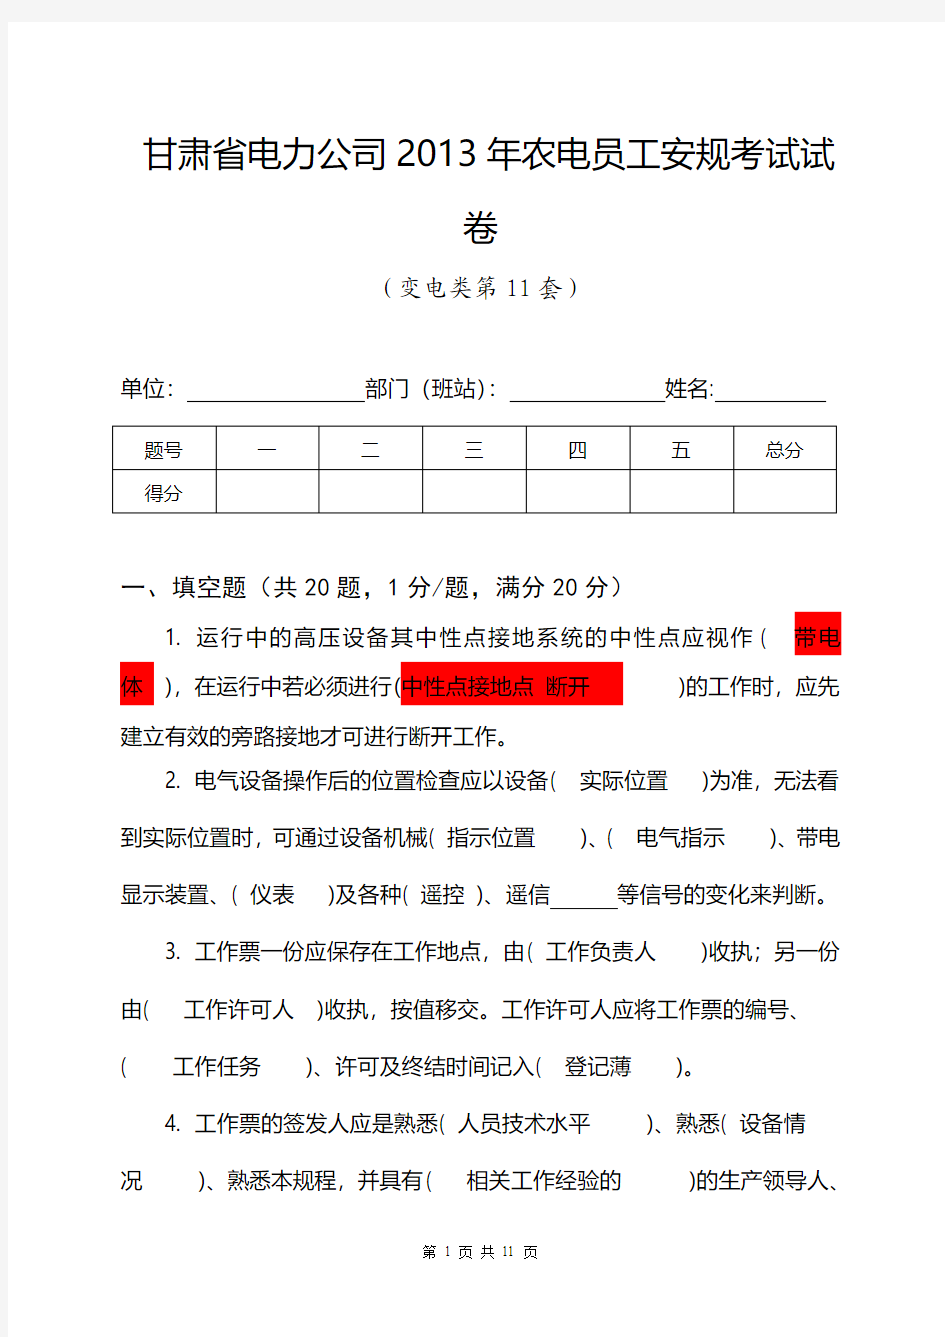 甘肃省电力公司2013年农电安规考试试卷(变电类第11套)